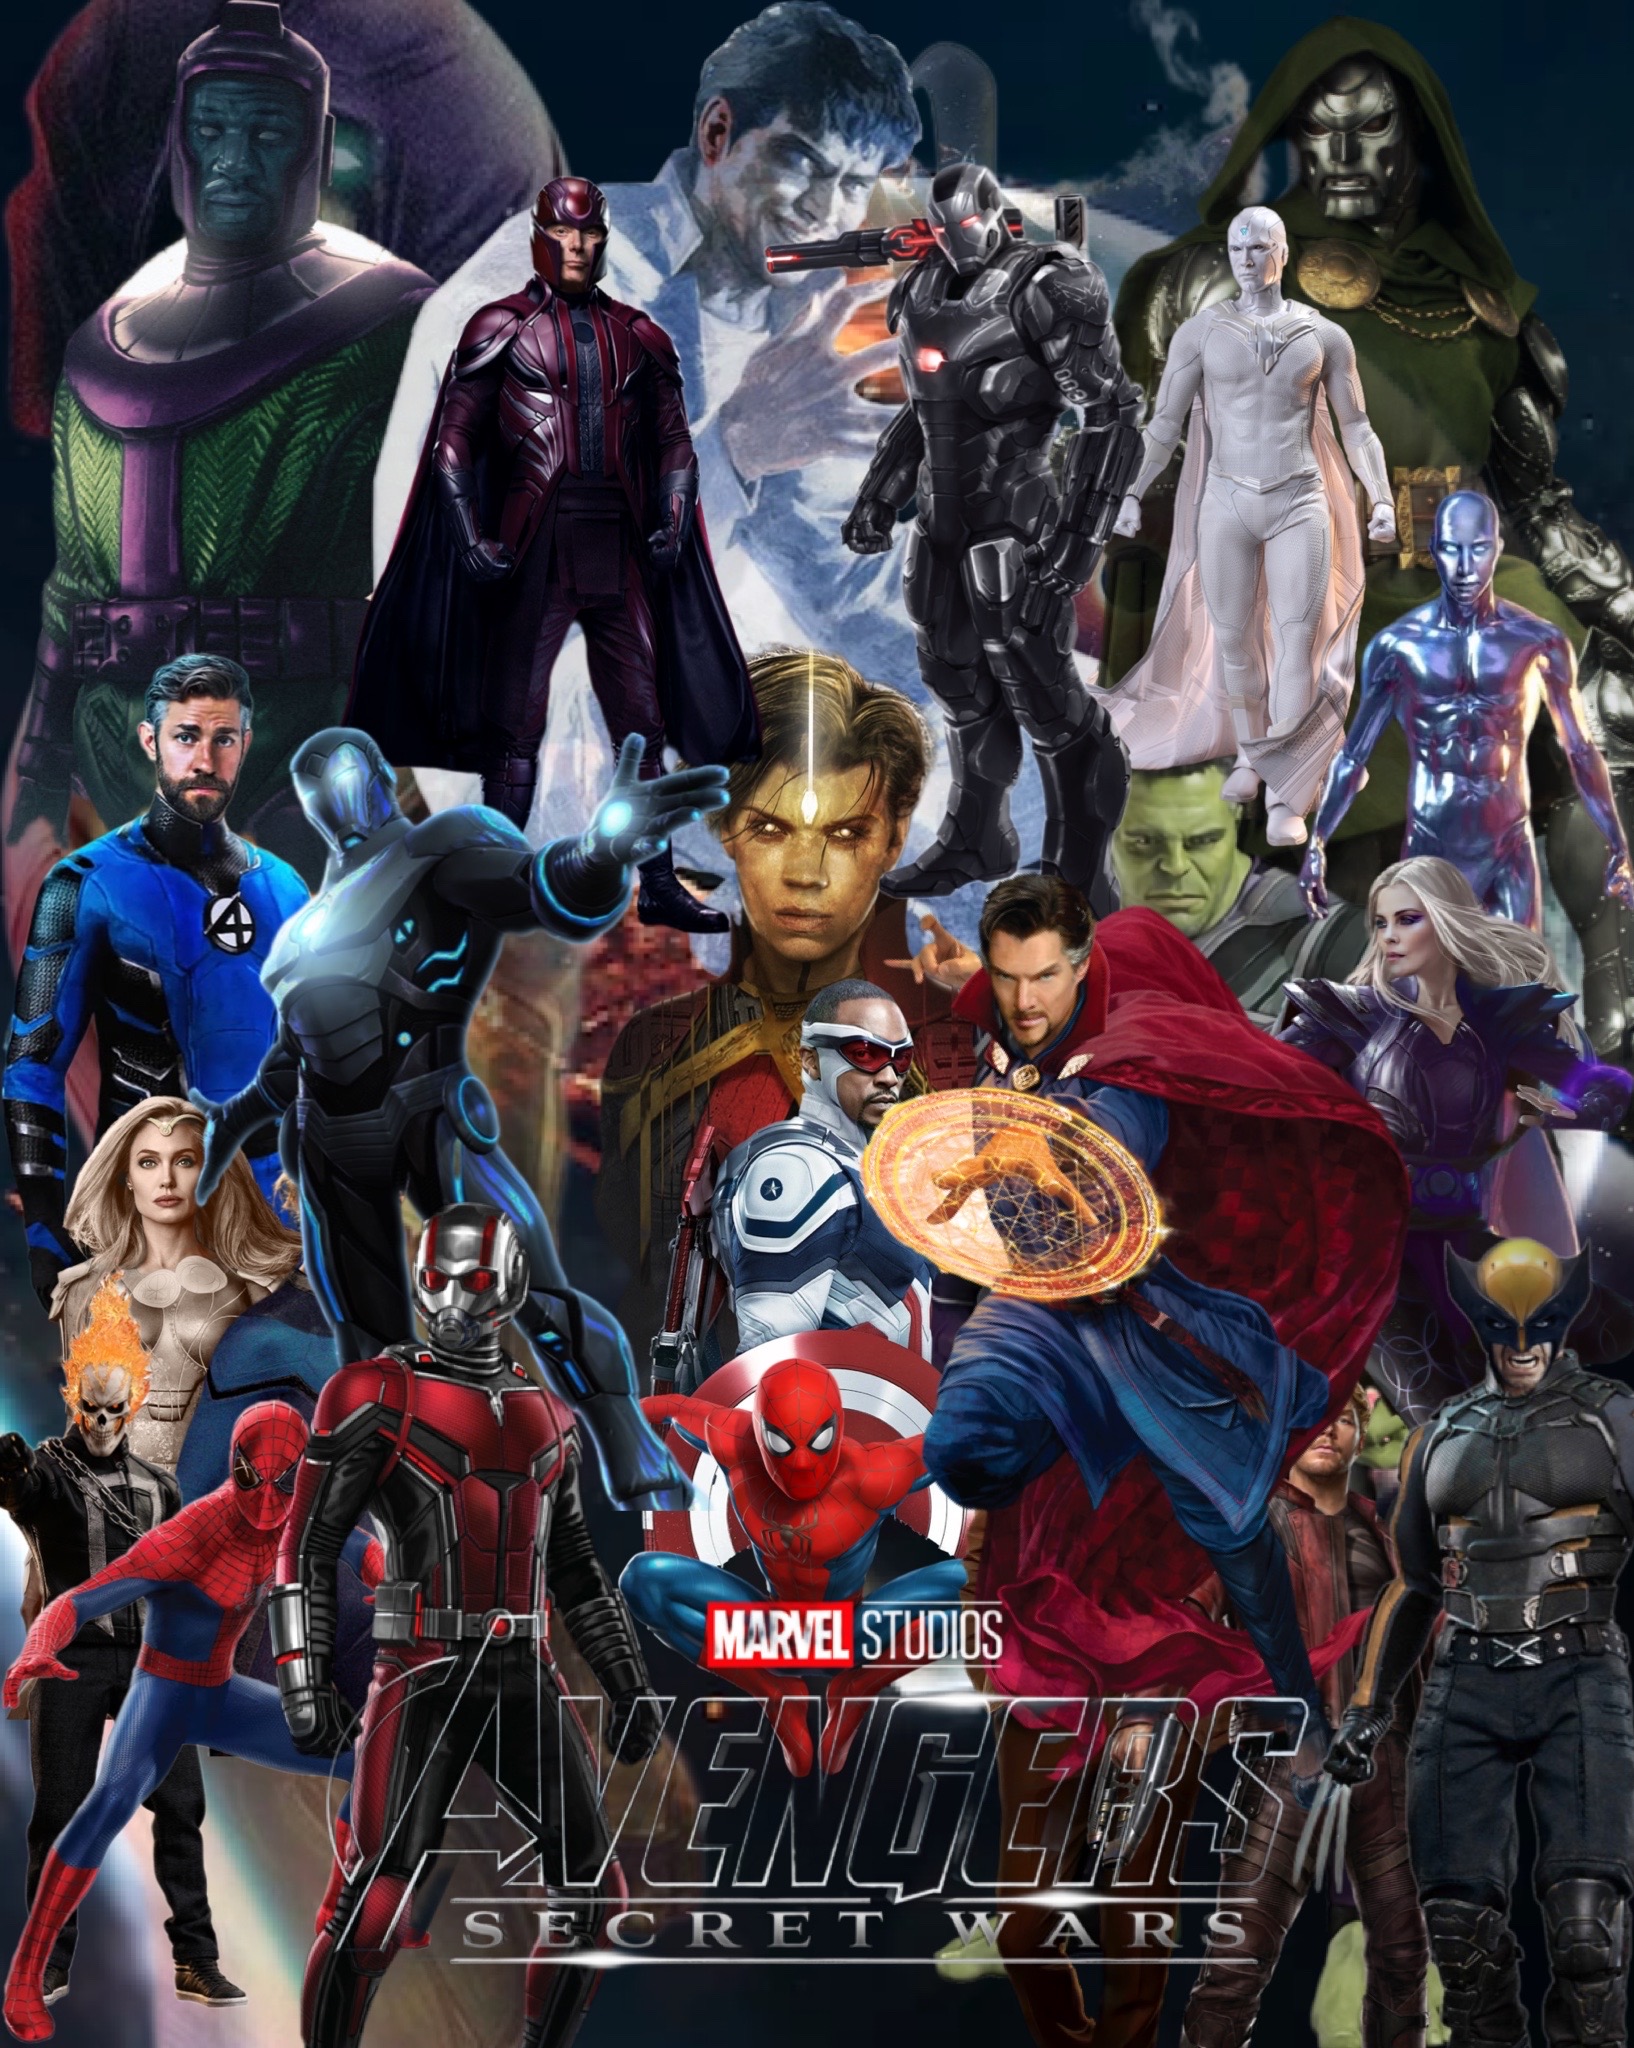 Avengers Kang Dynasty Fan Made Poster by AwsosomeAndrew20 on DeviantArt